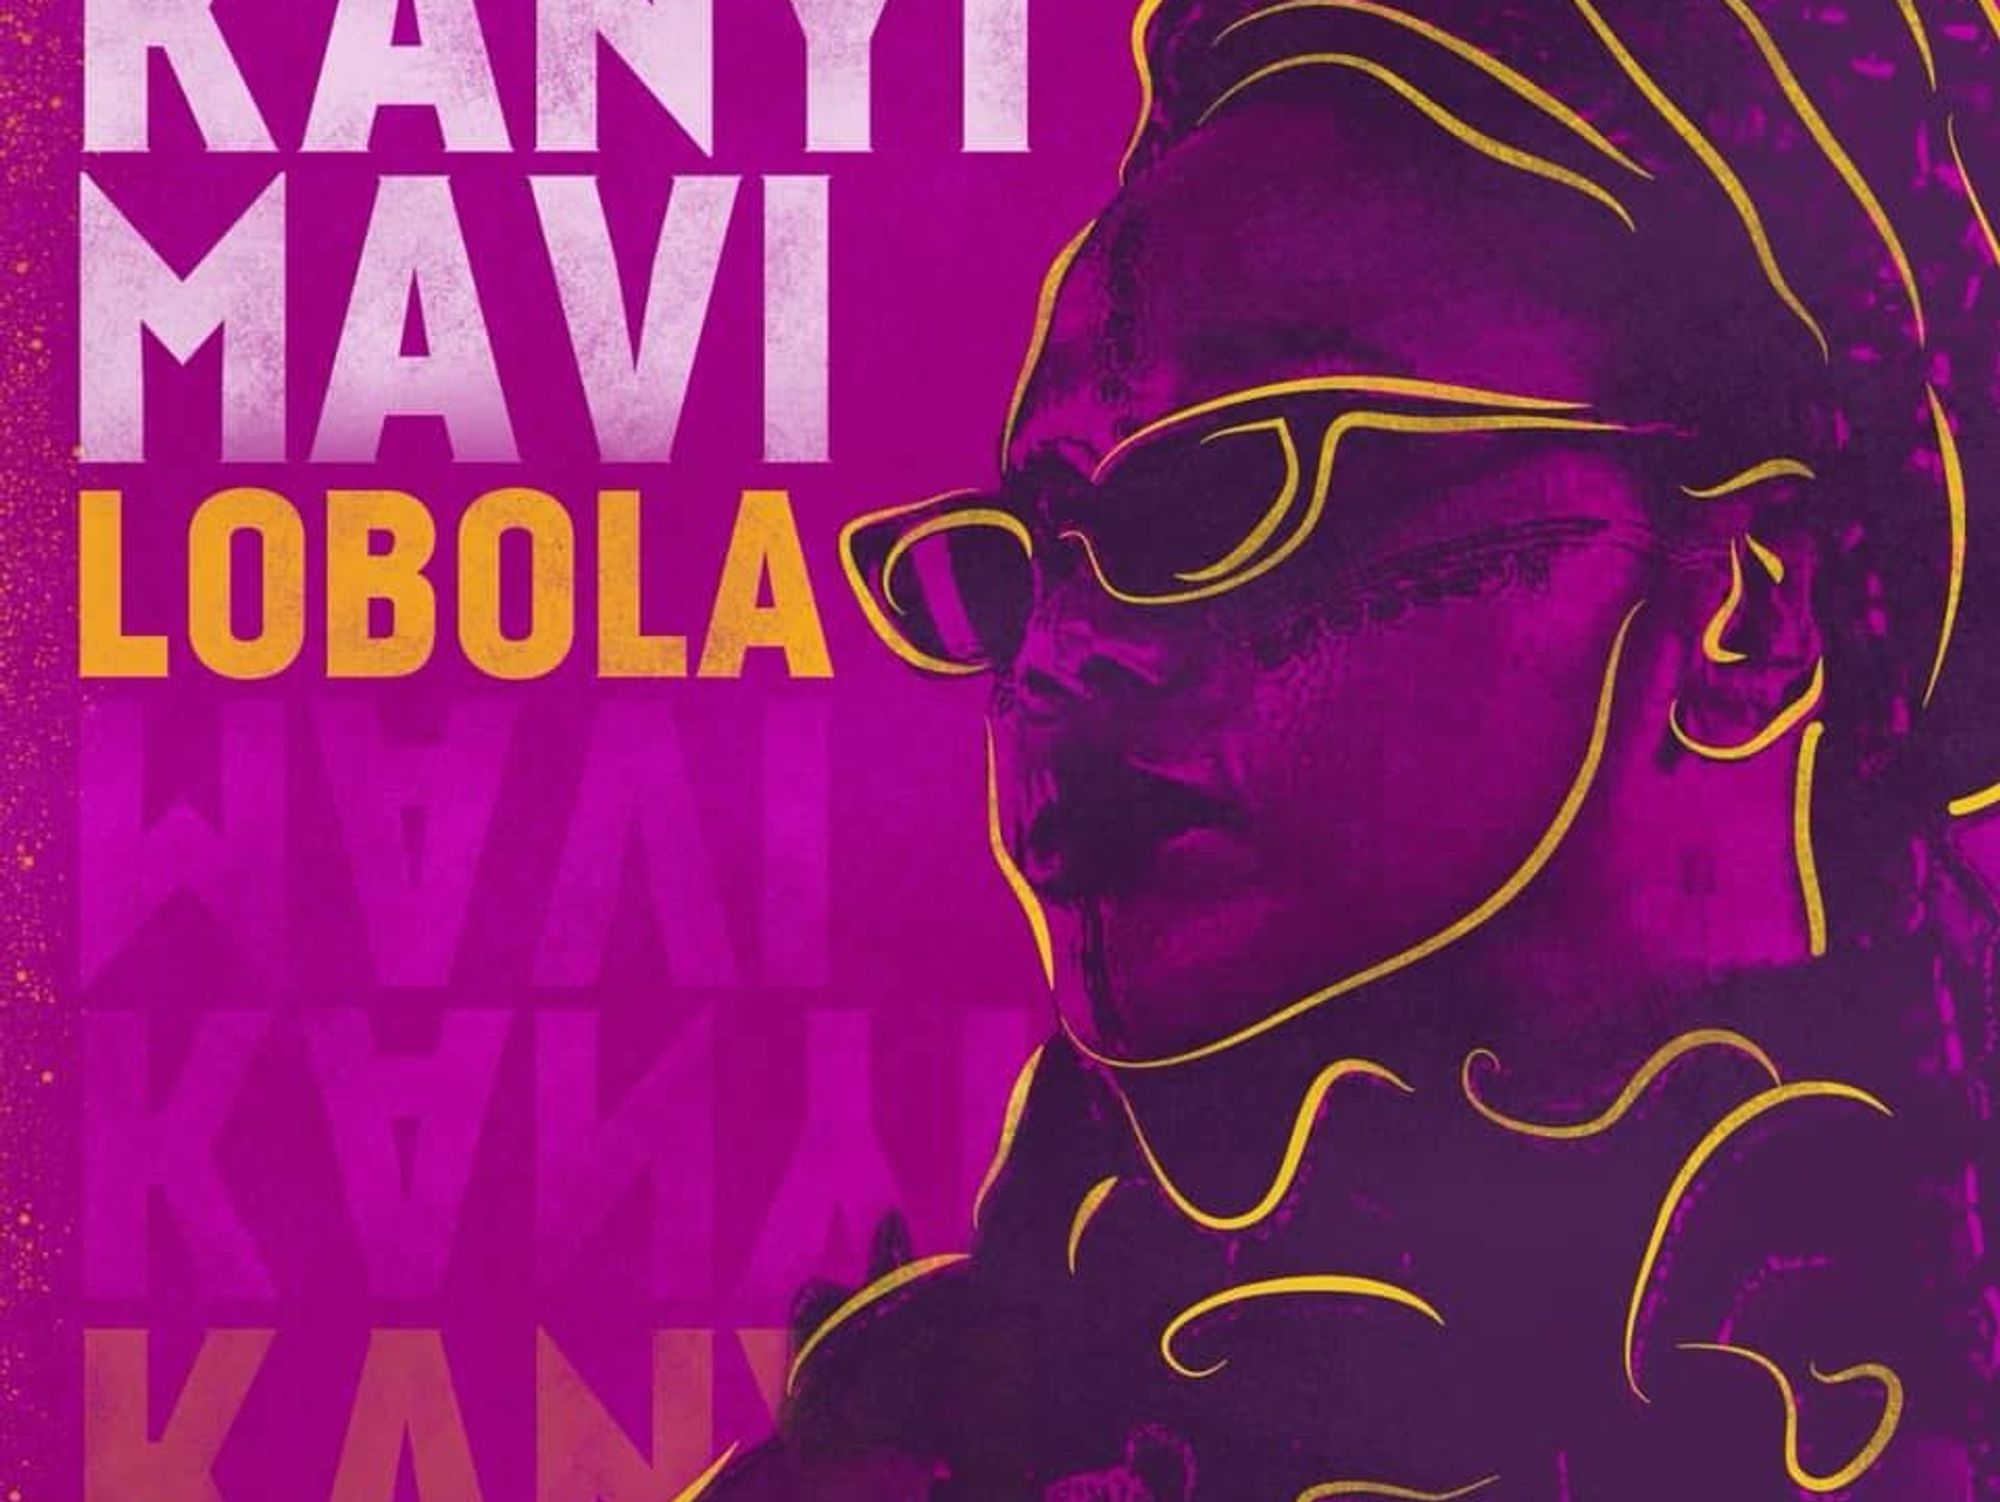 Kanyi Mavi Shares New Single ‘Lobola’ Produced by Kay Faith